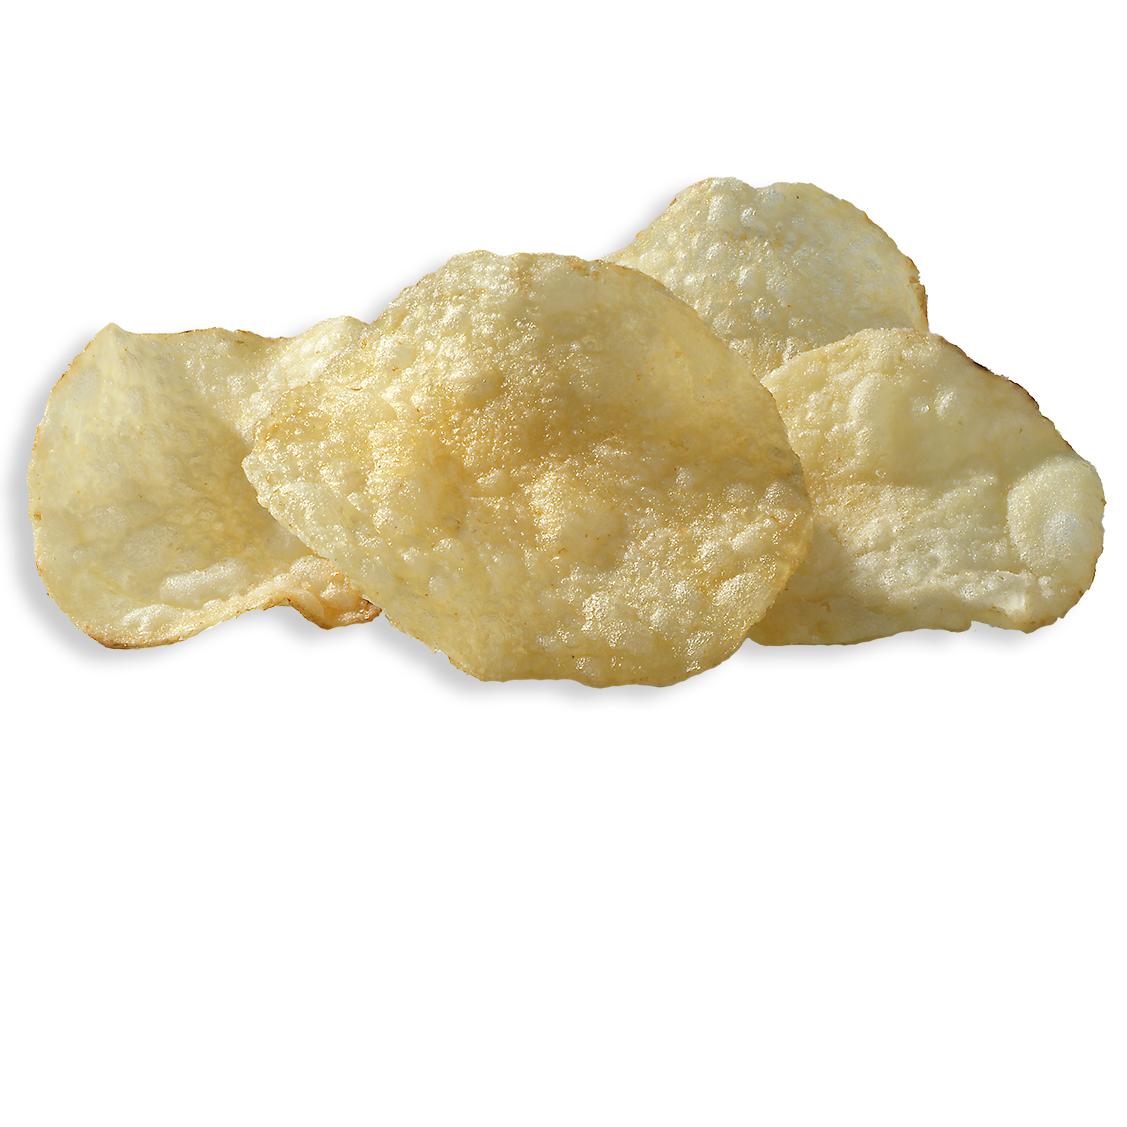 Sea Salt & Vinegar Kettle Cooked Potato Chips